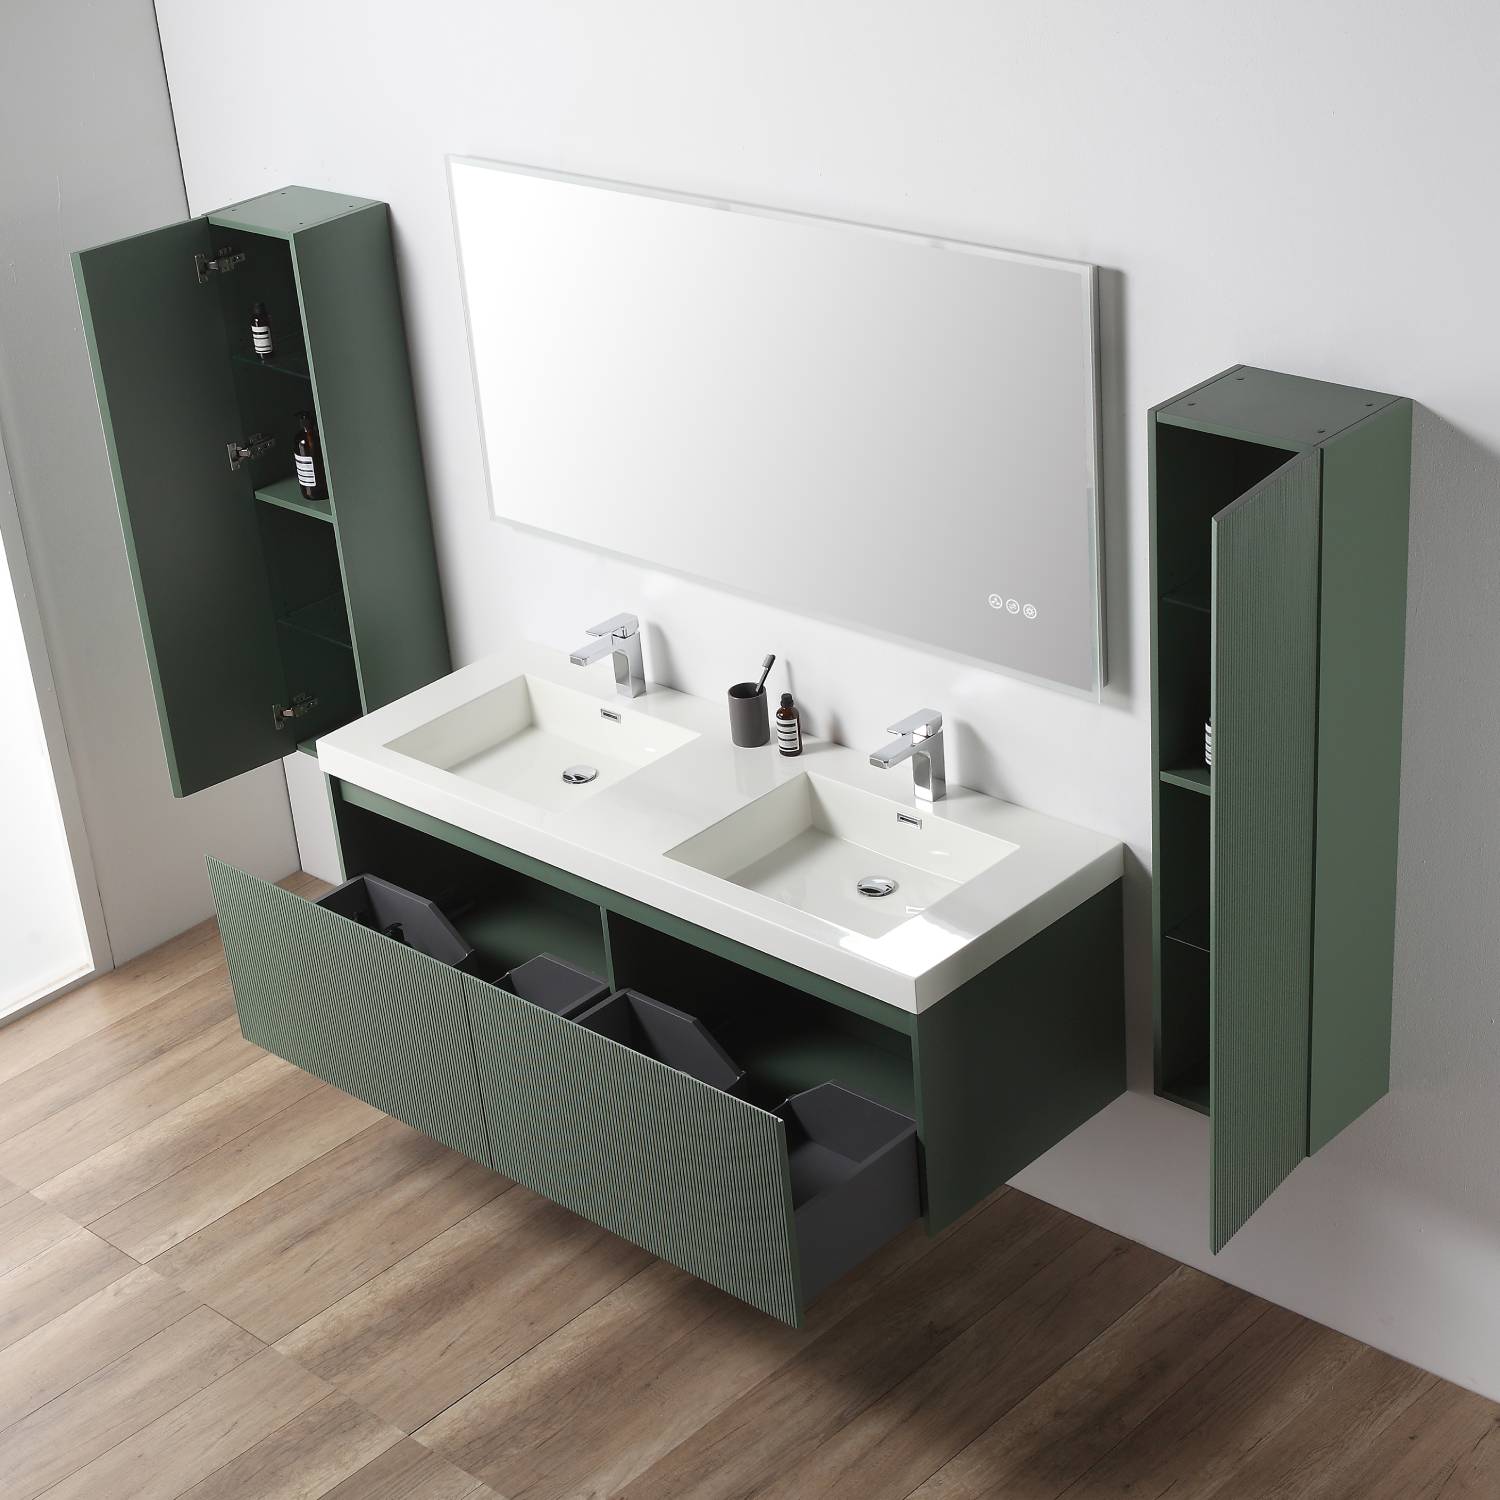 Positano 60" Luxury Double Bathroom Vanity with Acrylic Sink